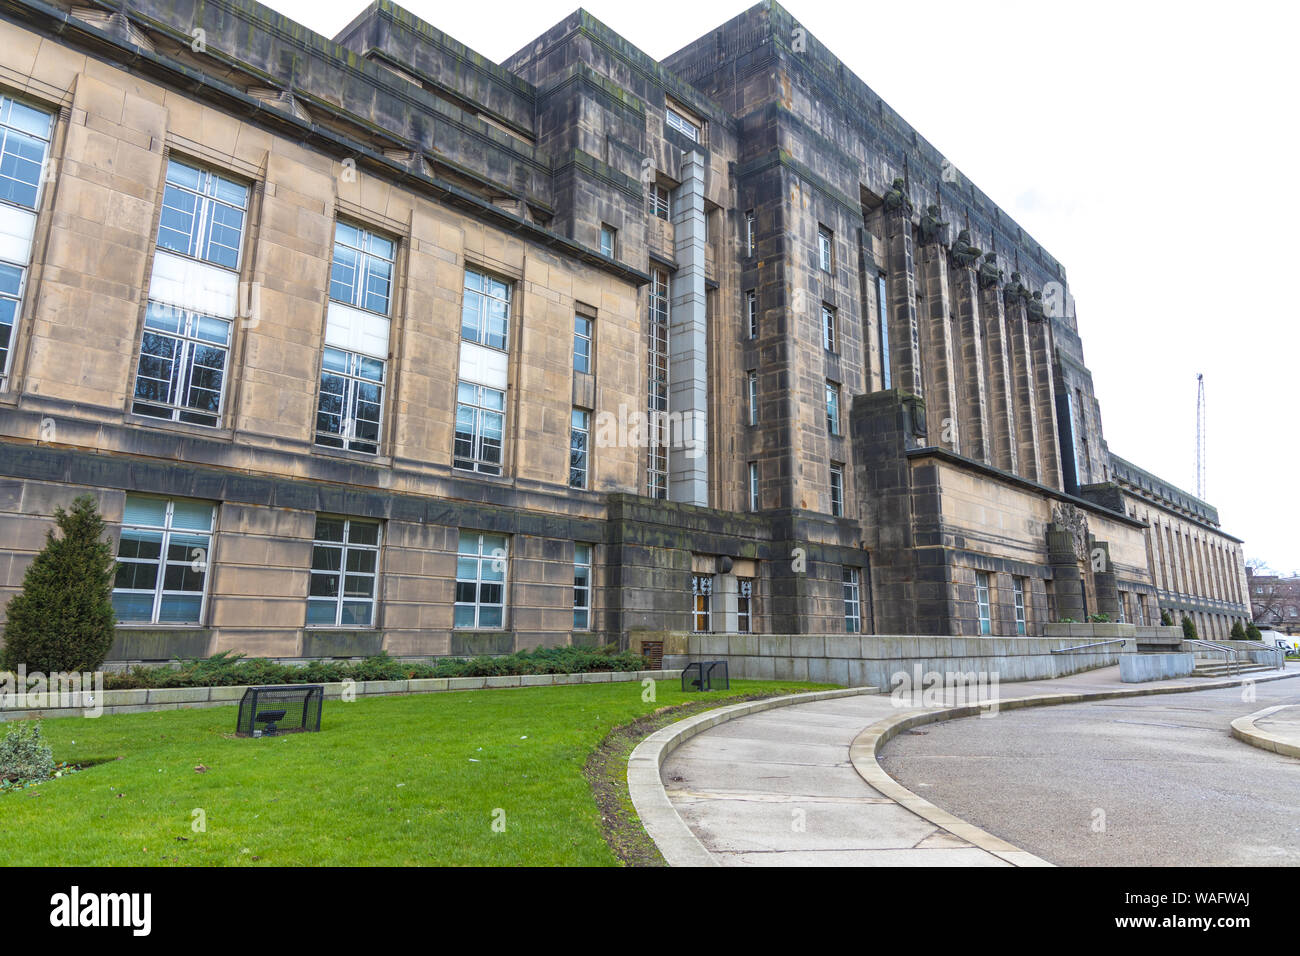 Die neoklassische Fassade des neuen Parlaments Haus auch als alte Royal High School, an der Regent Road neben dem Calton Hill Edinburgh Schottland Großbritannien Stockfoto